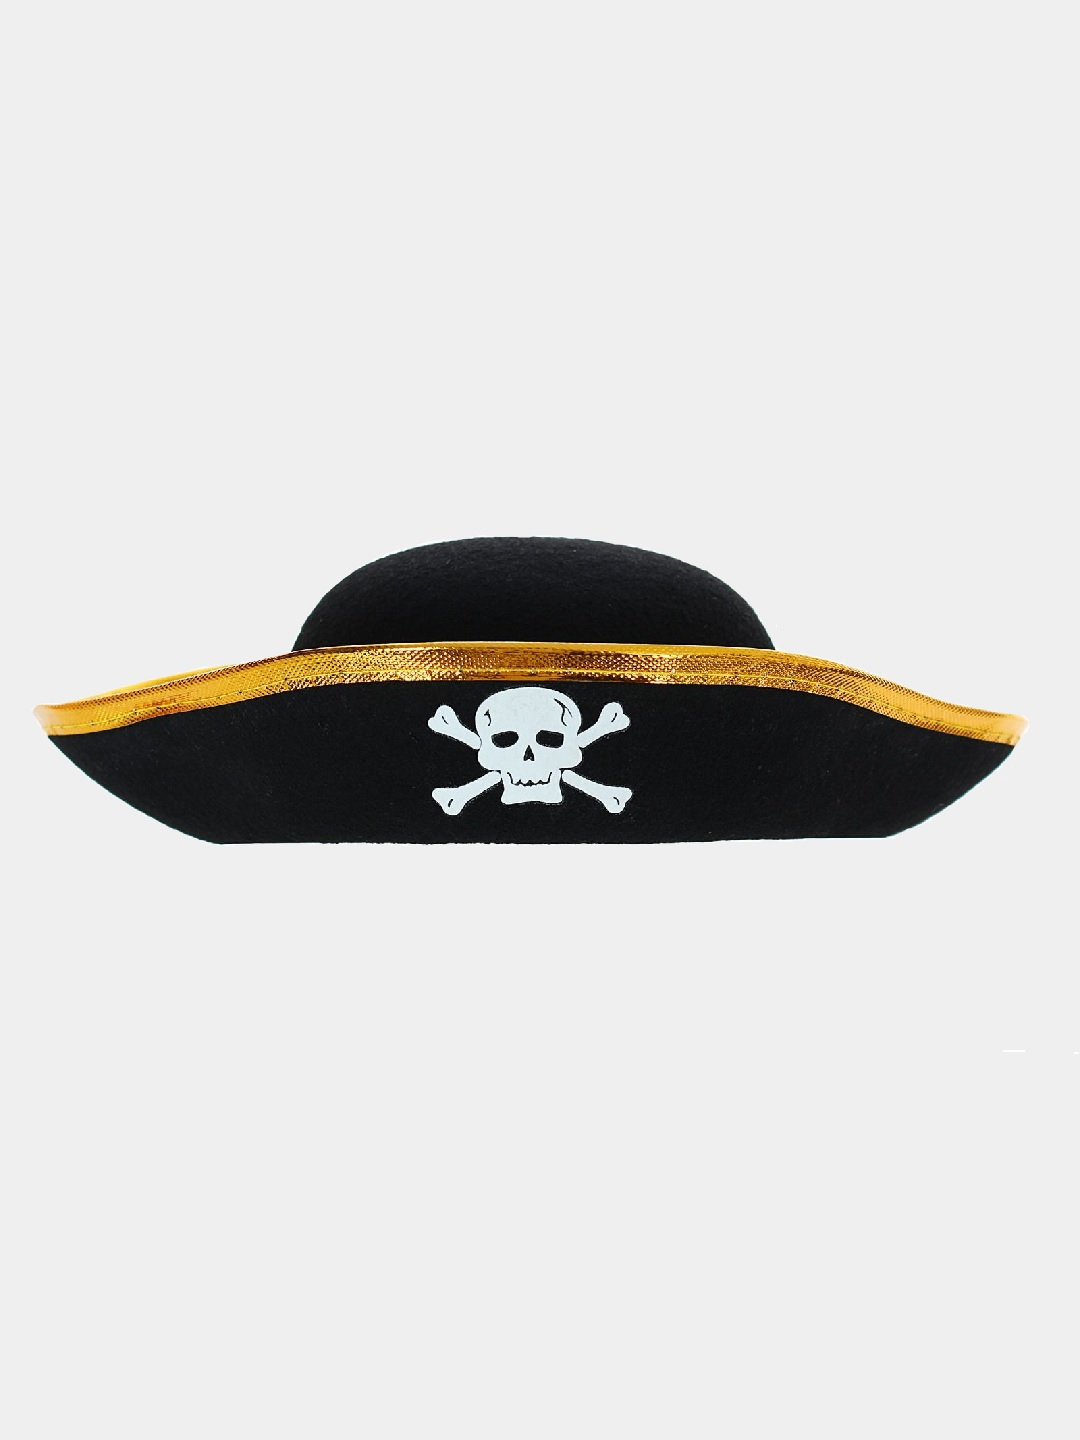 Шляпа пирата «Неуловимый Джо», р-р 56-58